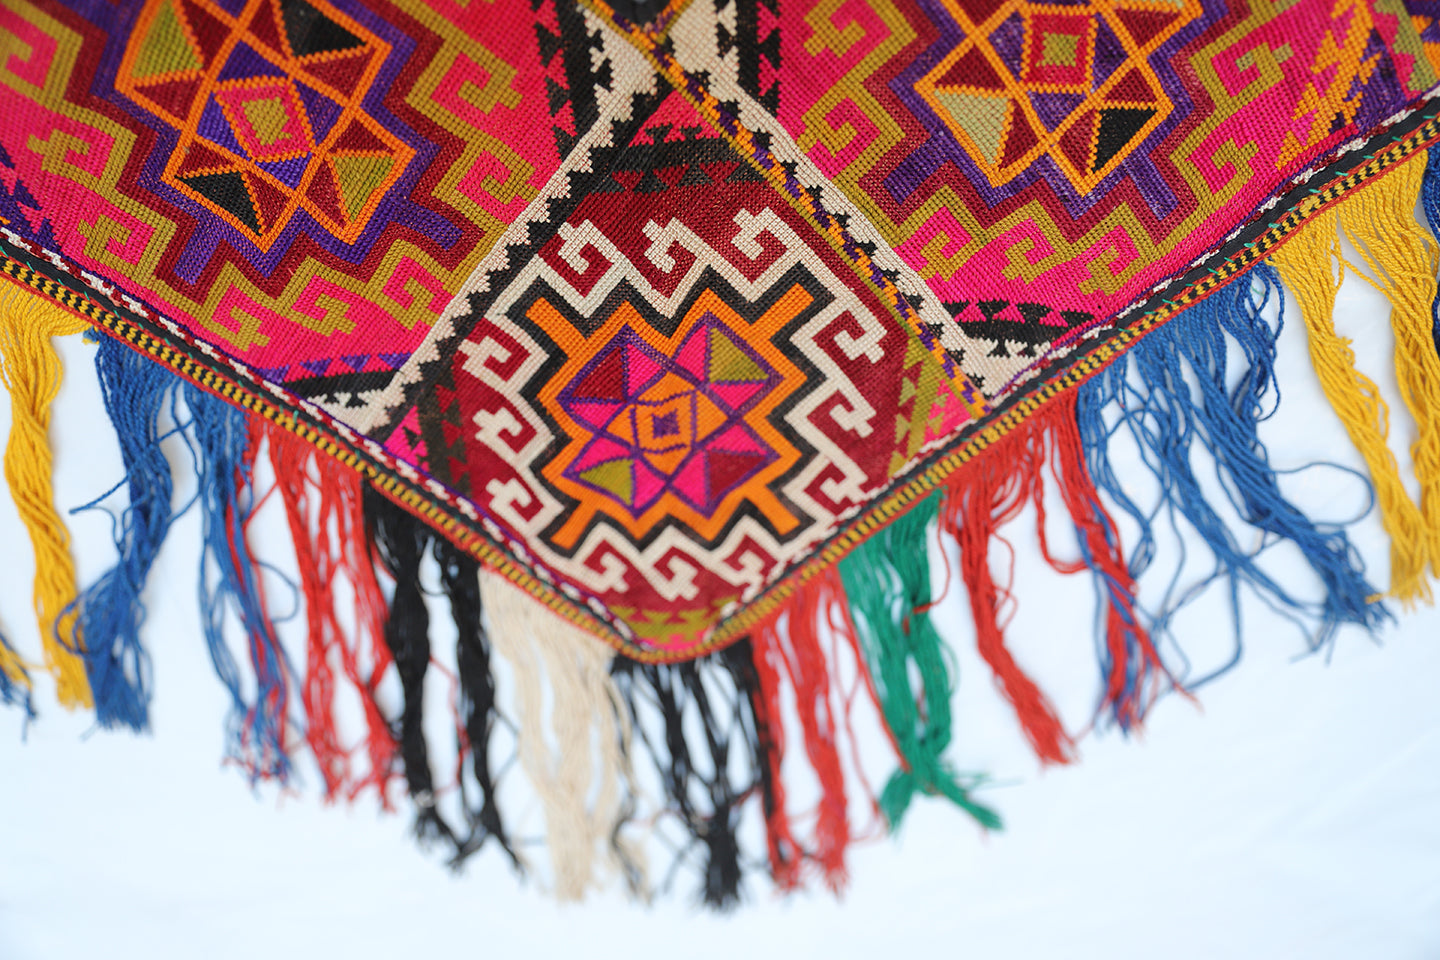 2'x4' Uzbek Yurt decoration Embroidery